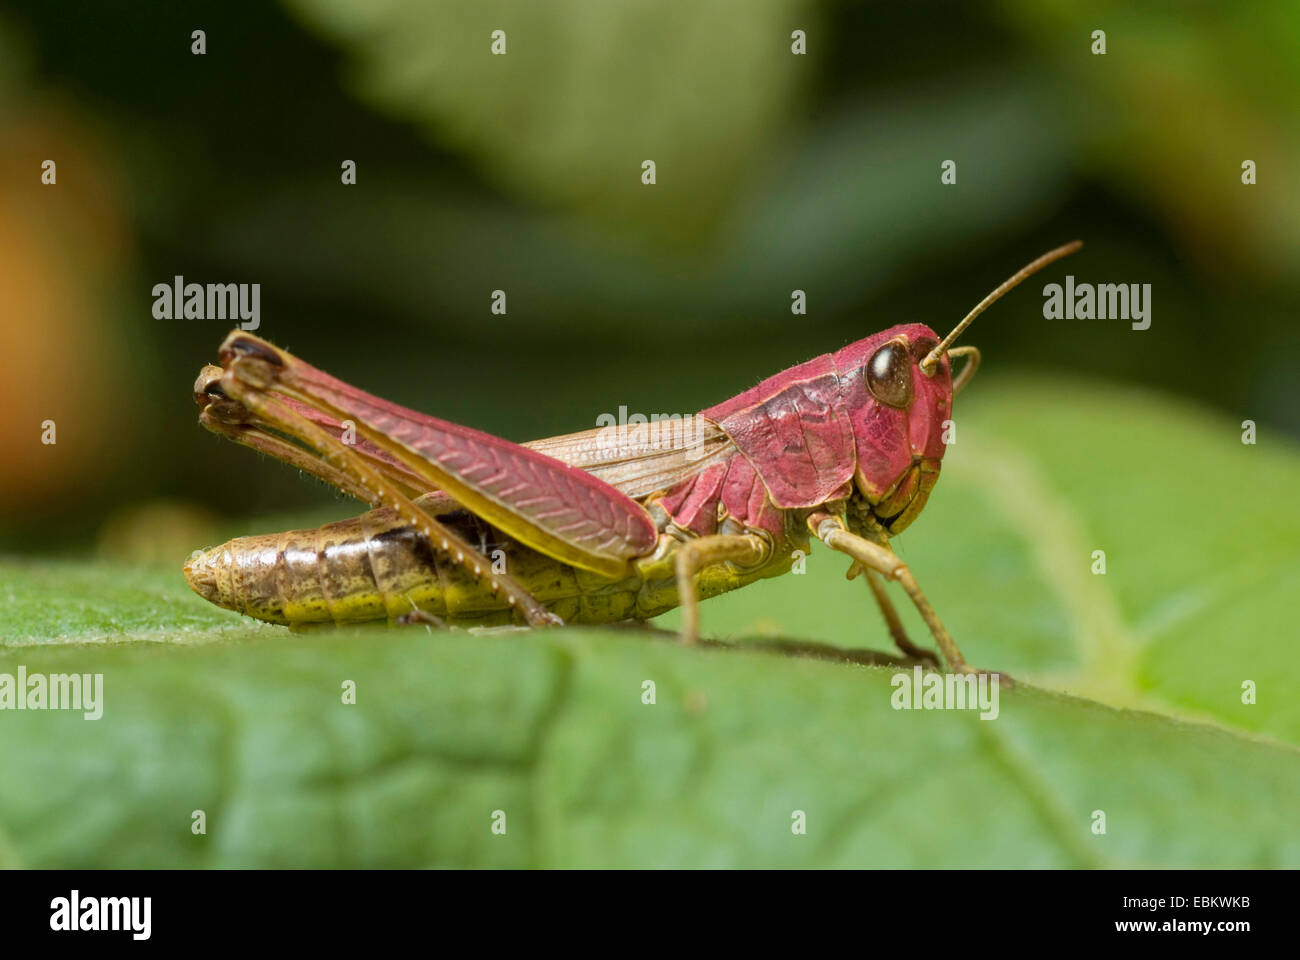 Marsh-meadow grasshopper (Chorthippus montanus), assis sur une feuille, Allemagne Banque D'Images